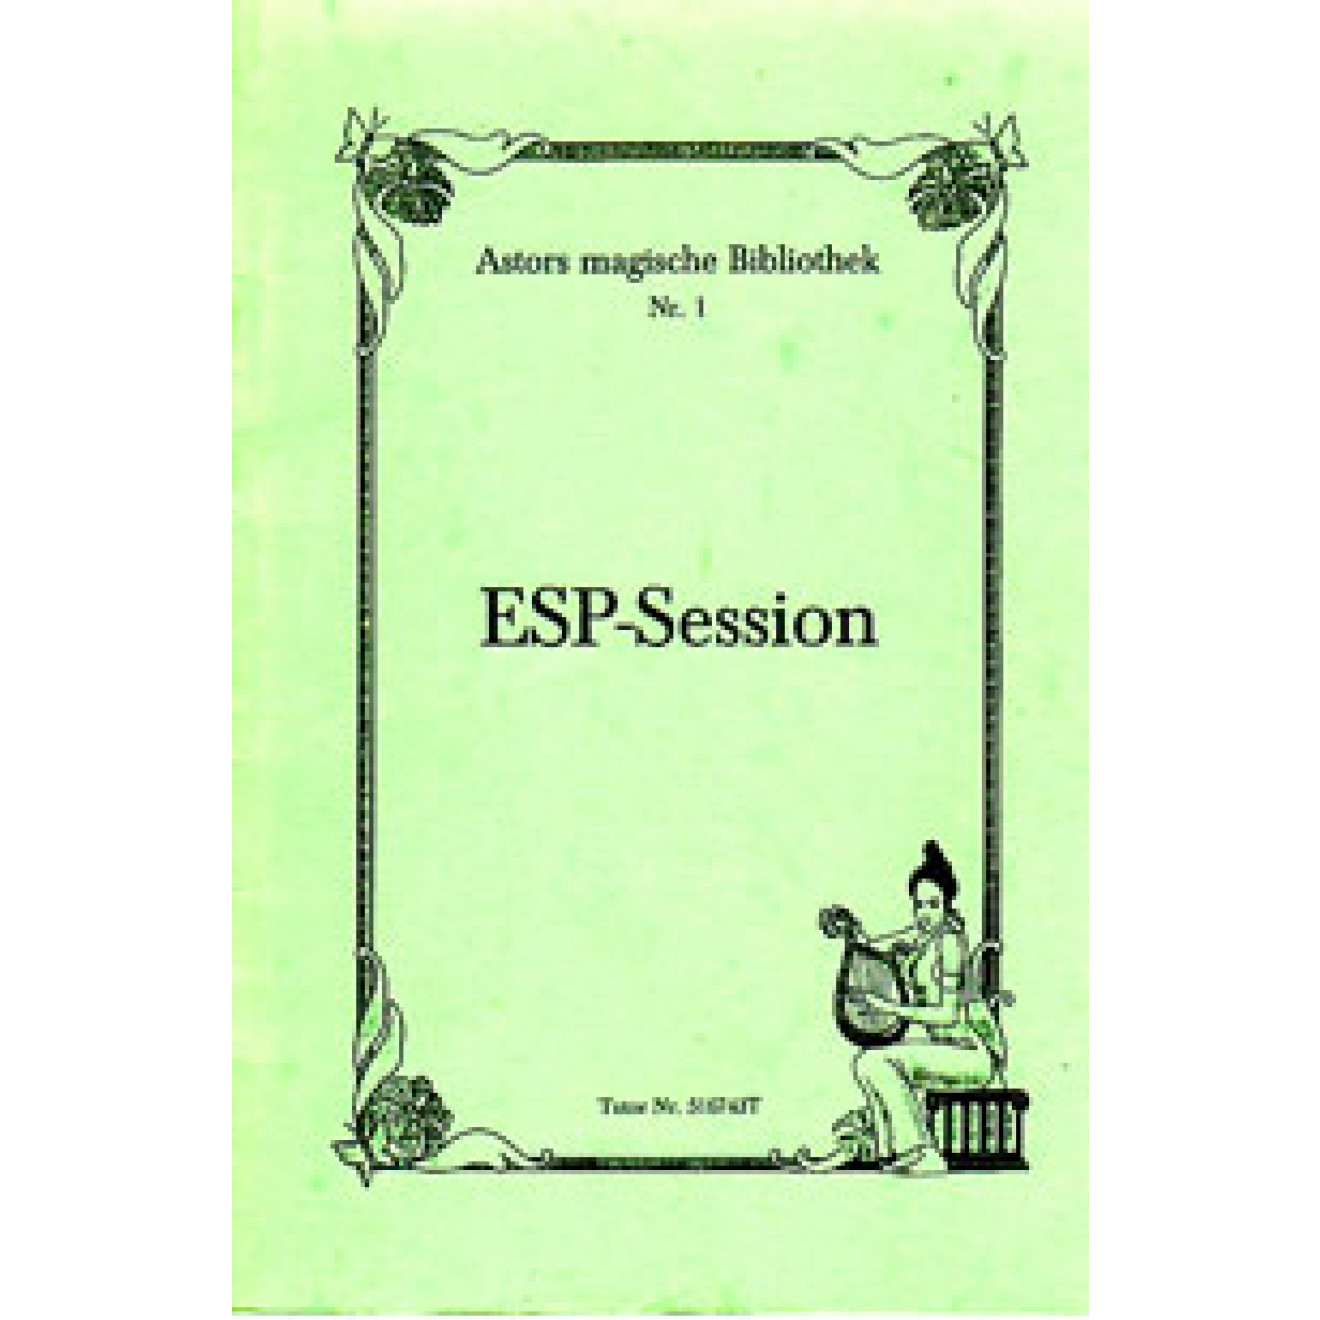 ESP-Session